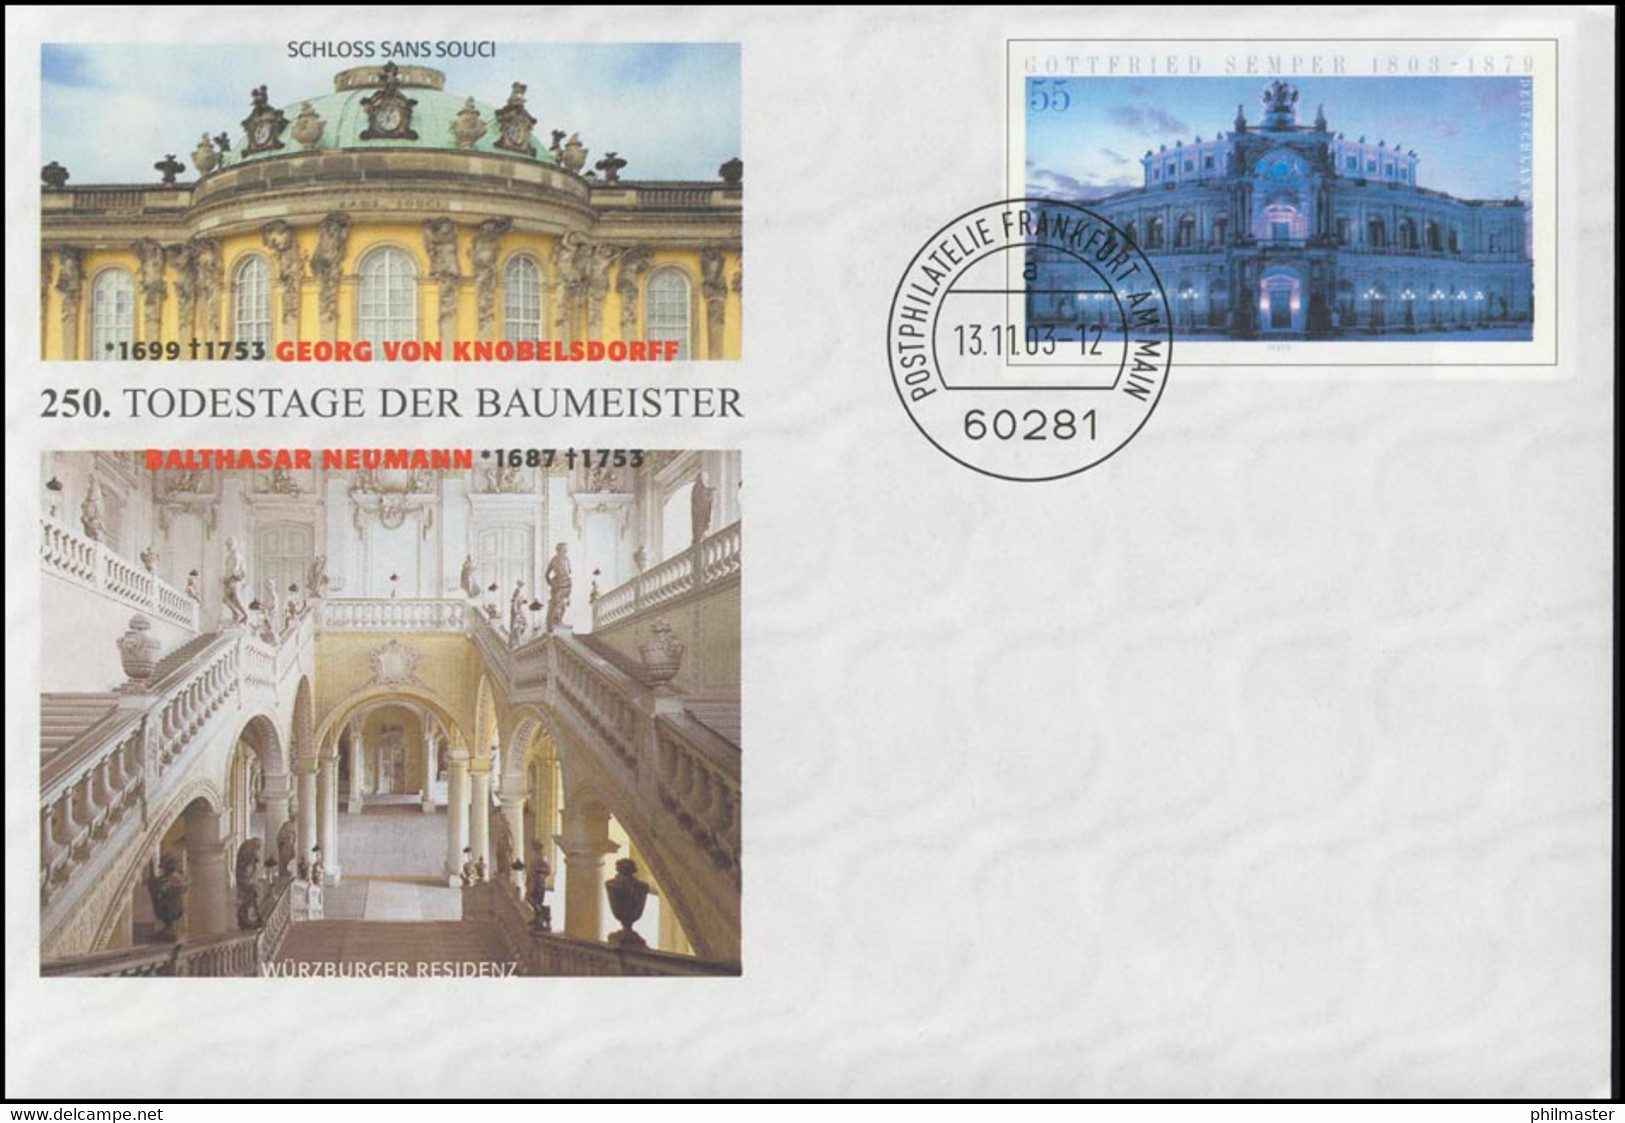 USo 64 Baumeister Knobelsdorff Und Neumann, VS-O Frankfurt 13.11.2003 - Briefomslagen - Ongebruikt